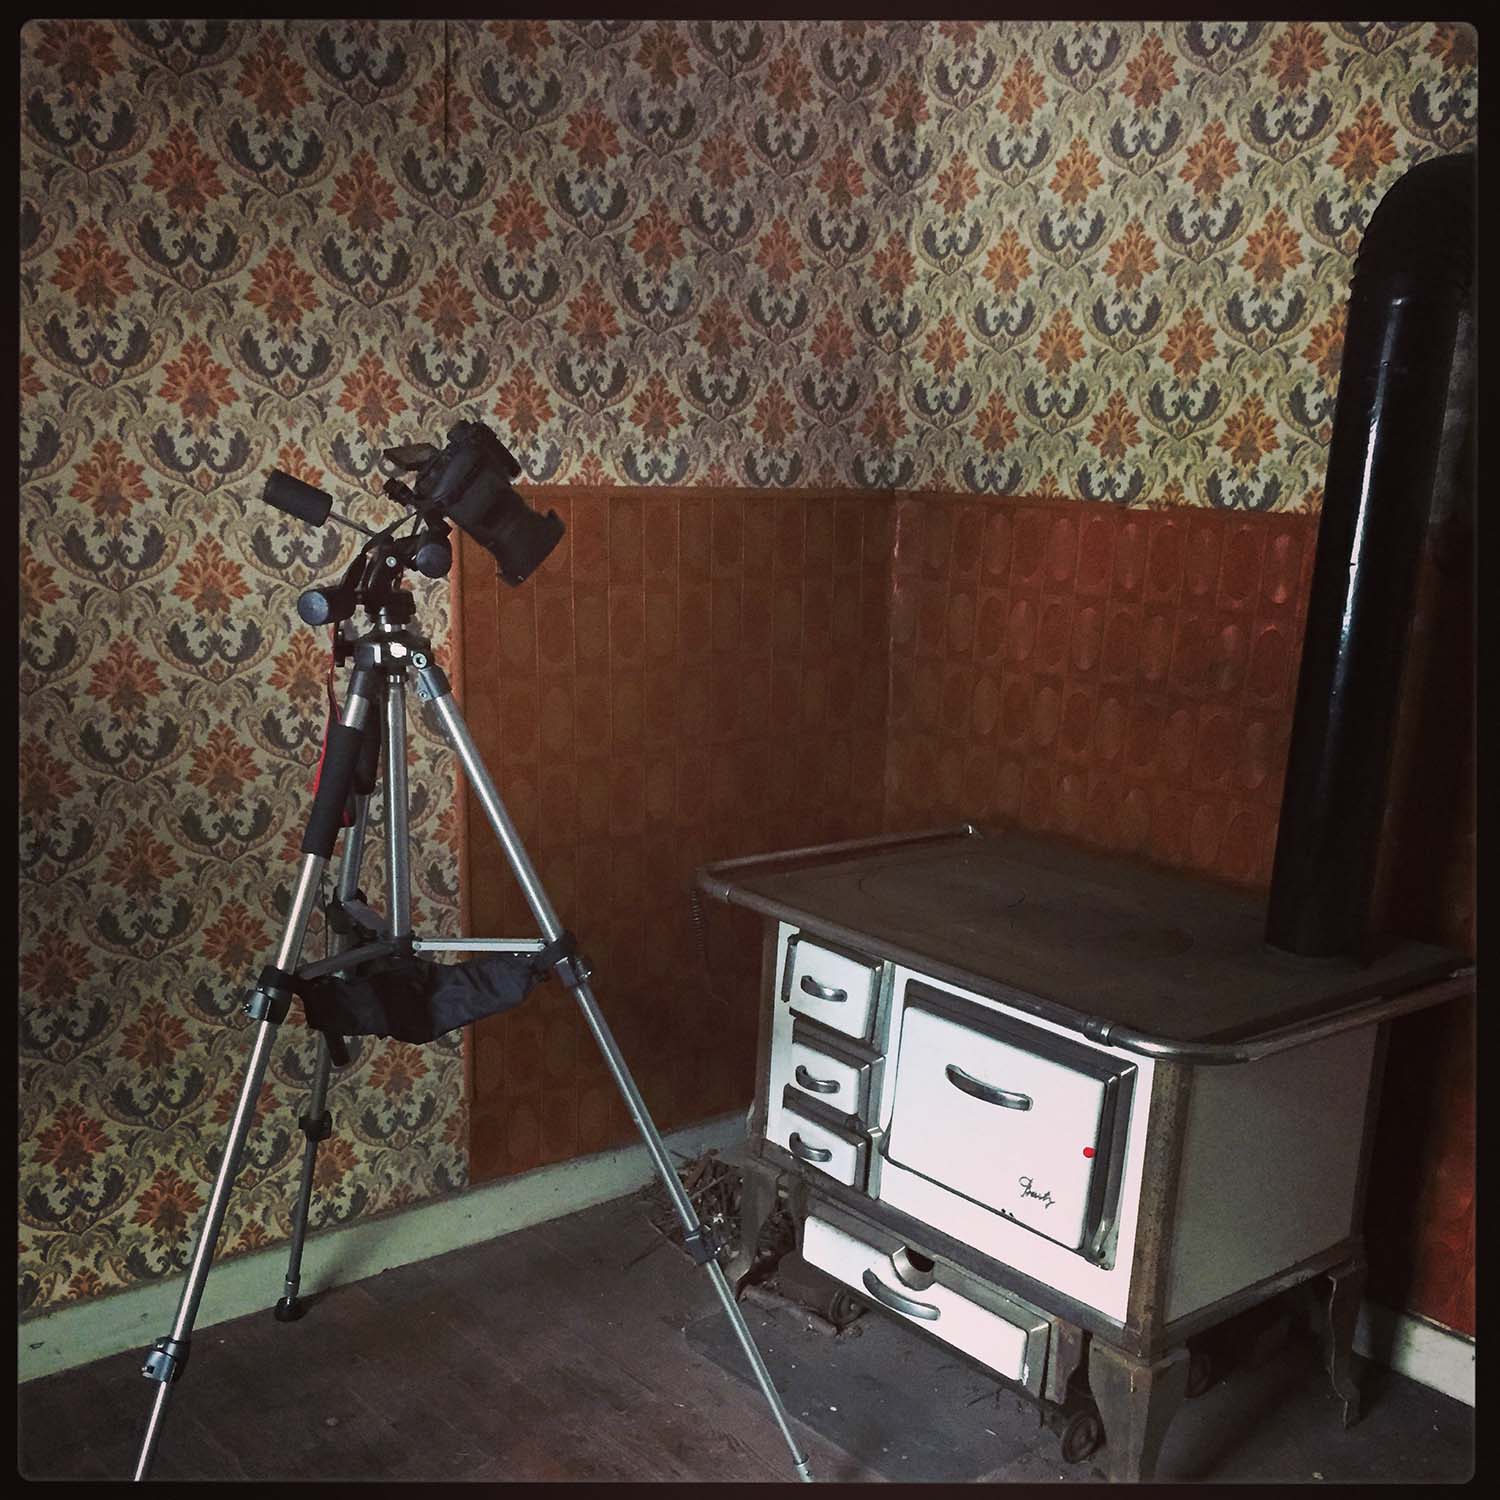 Kamera auf Stativ, gerichtet auf einen sehr alten Küchenherd